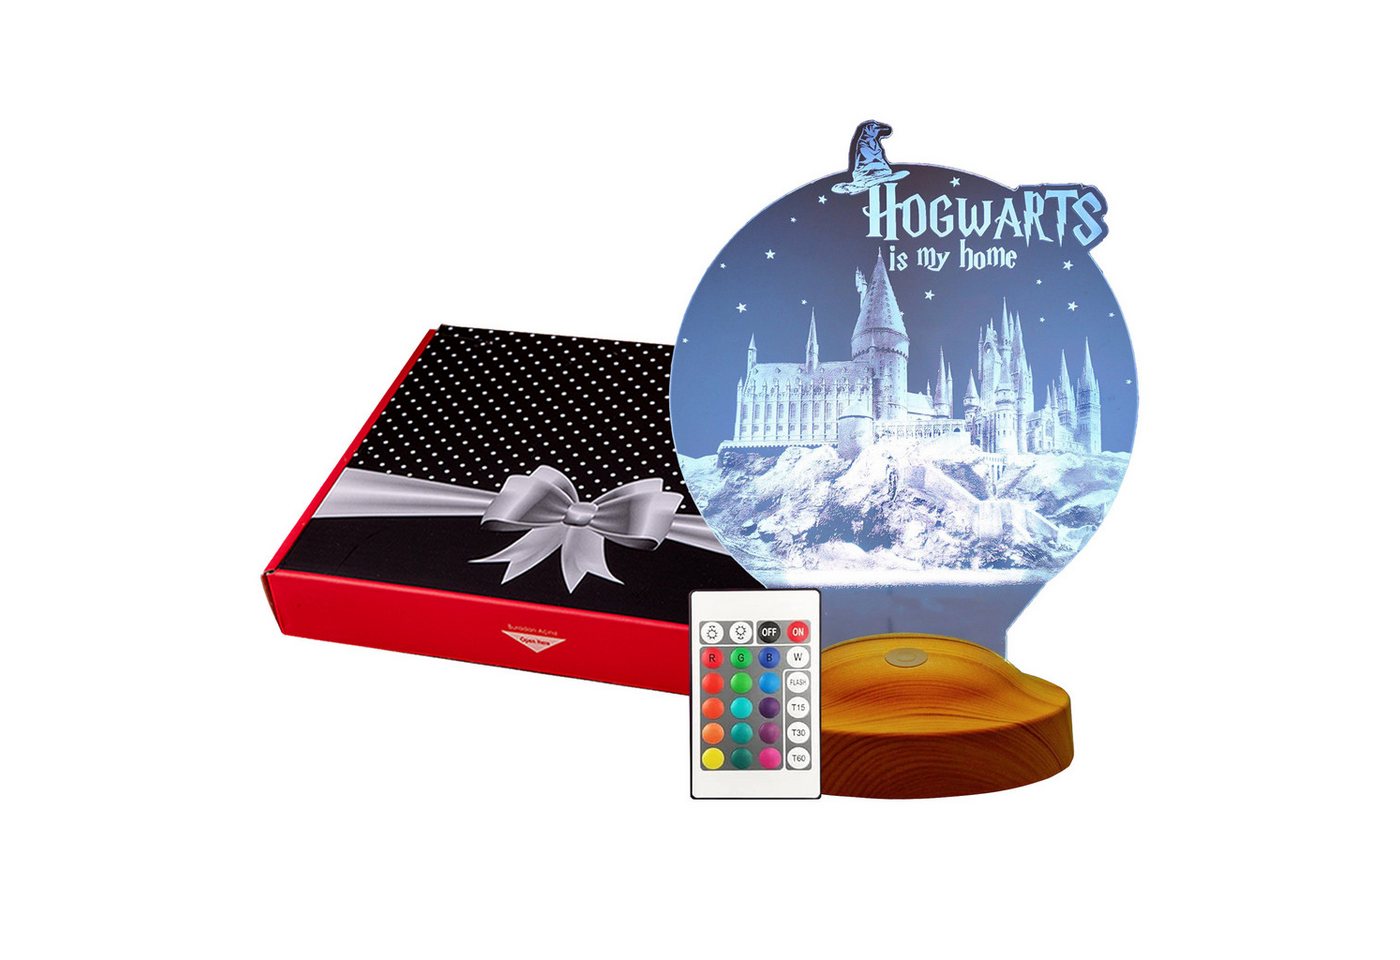 Geschenkelampe LED Nachttischlampe Hogwarts Harry Potter 3D mehrfarbiges Nachtlicht Geschenke für Kinder, Leuchte 7 Farben fest integriert, Geburtstagsgeschenk für Freunde, Mädchen, Jungen, HP Fans, Kollegen von Geschenkelampe